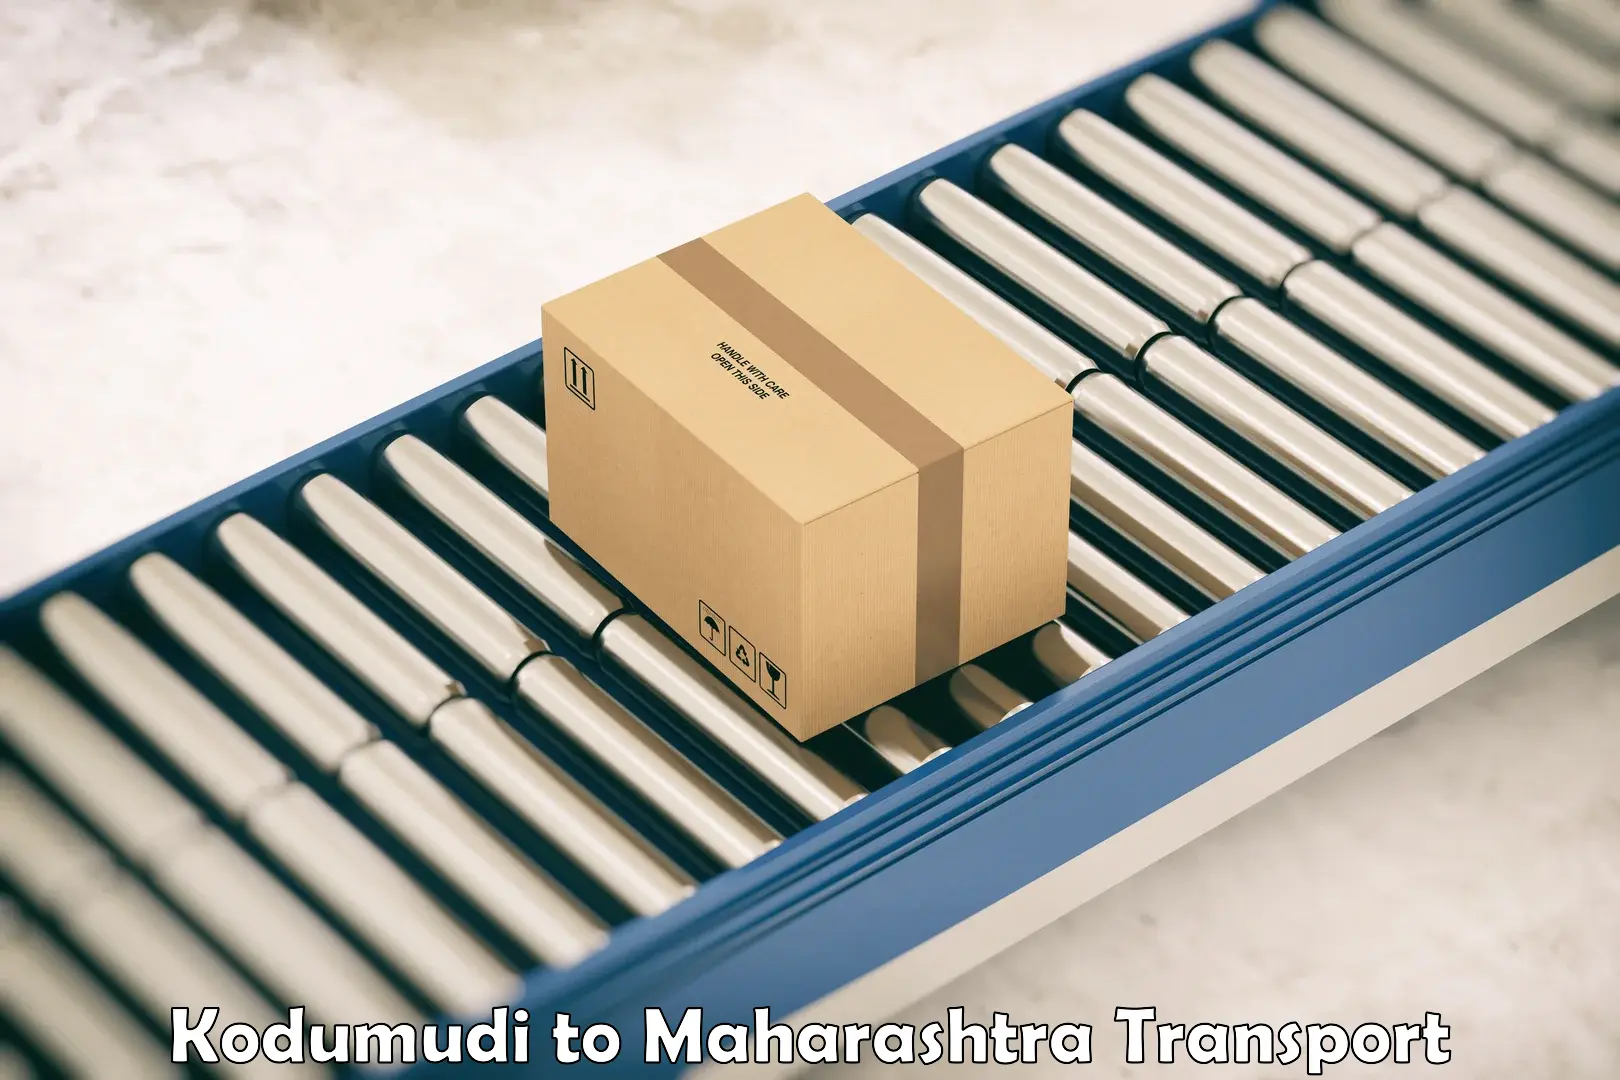 Furniture transport service Kodumudi to Mahabaleshwar